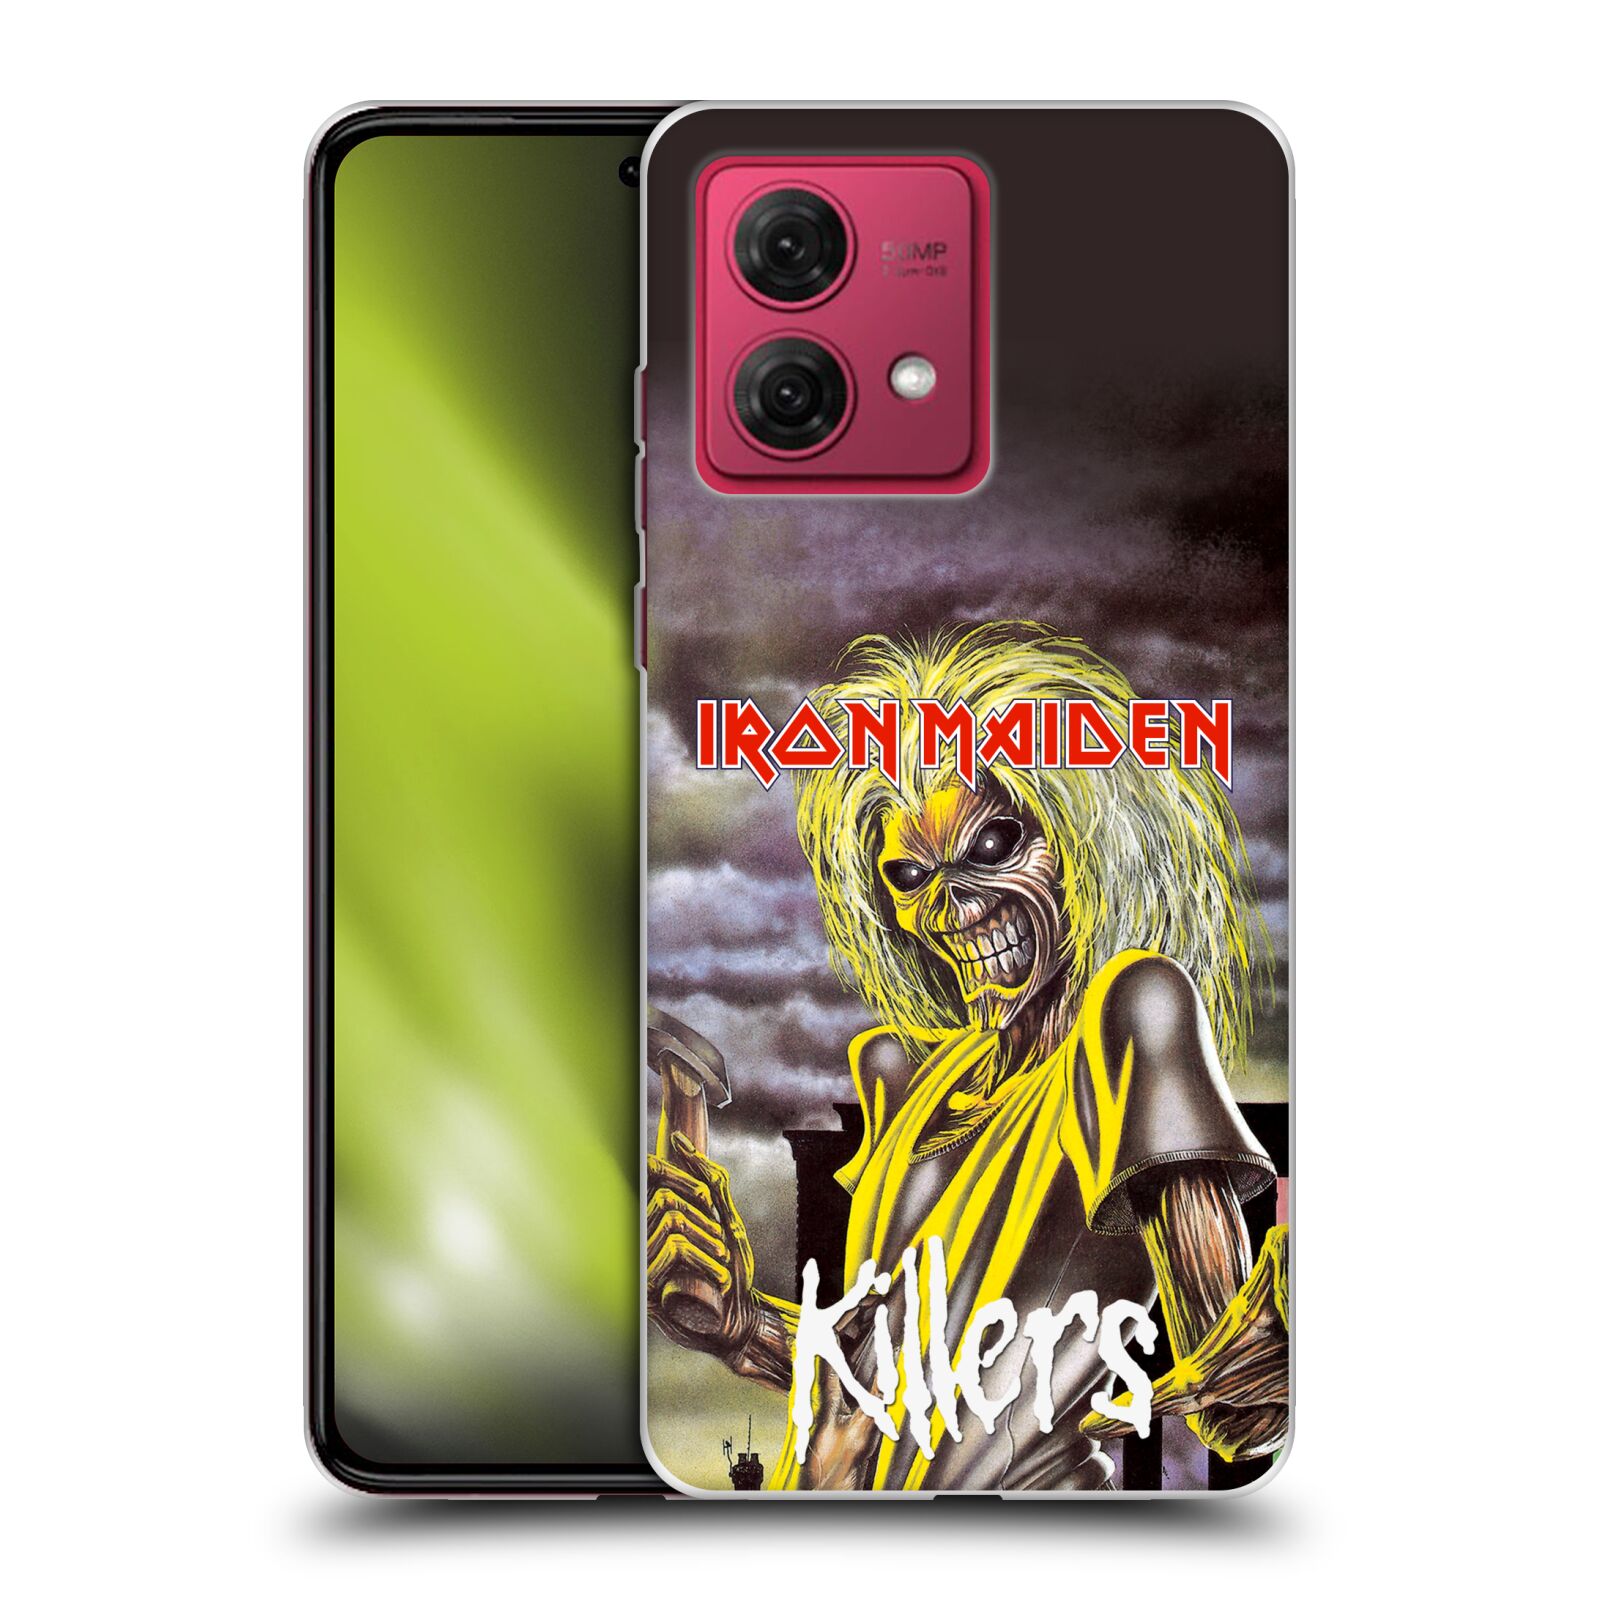 Silikonové pouzdro na mobil Motorola Moto G84 5G - Head Case - Iron Maiden - Killers (Silikonový kryt, obal, pouzdro na mobilní telefon Motorola Moto G84 5G s motivem Iron Maiden - Killers)